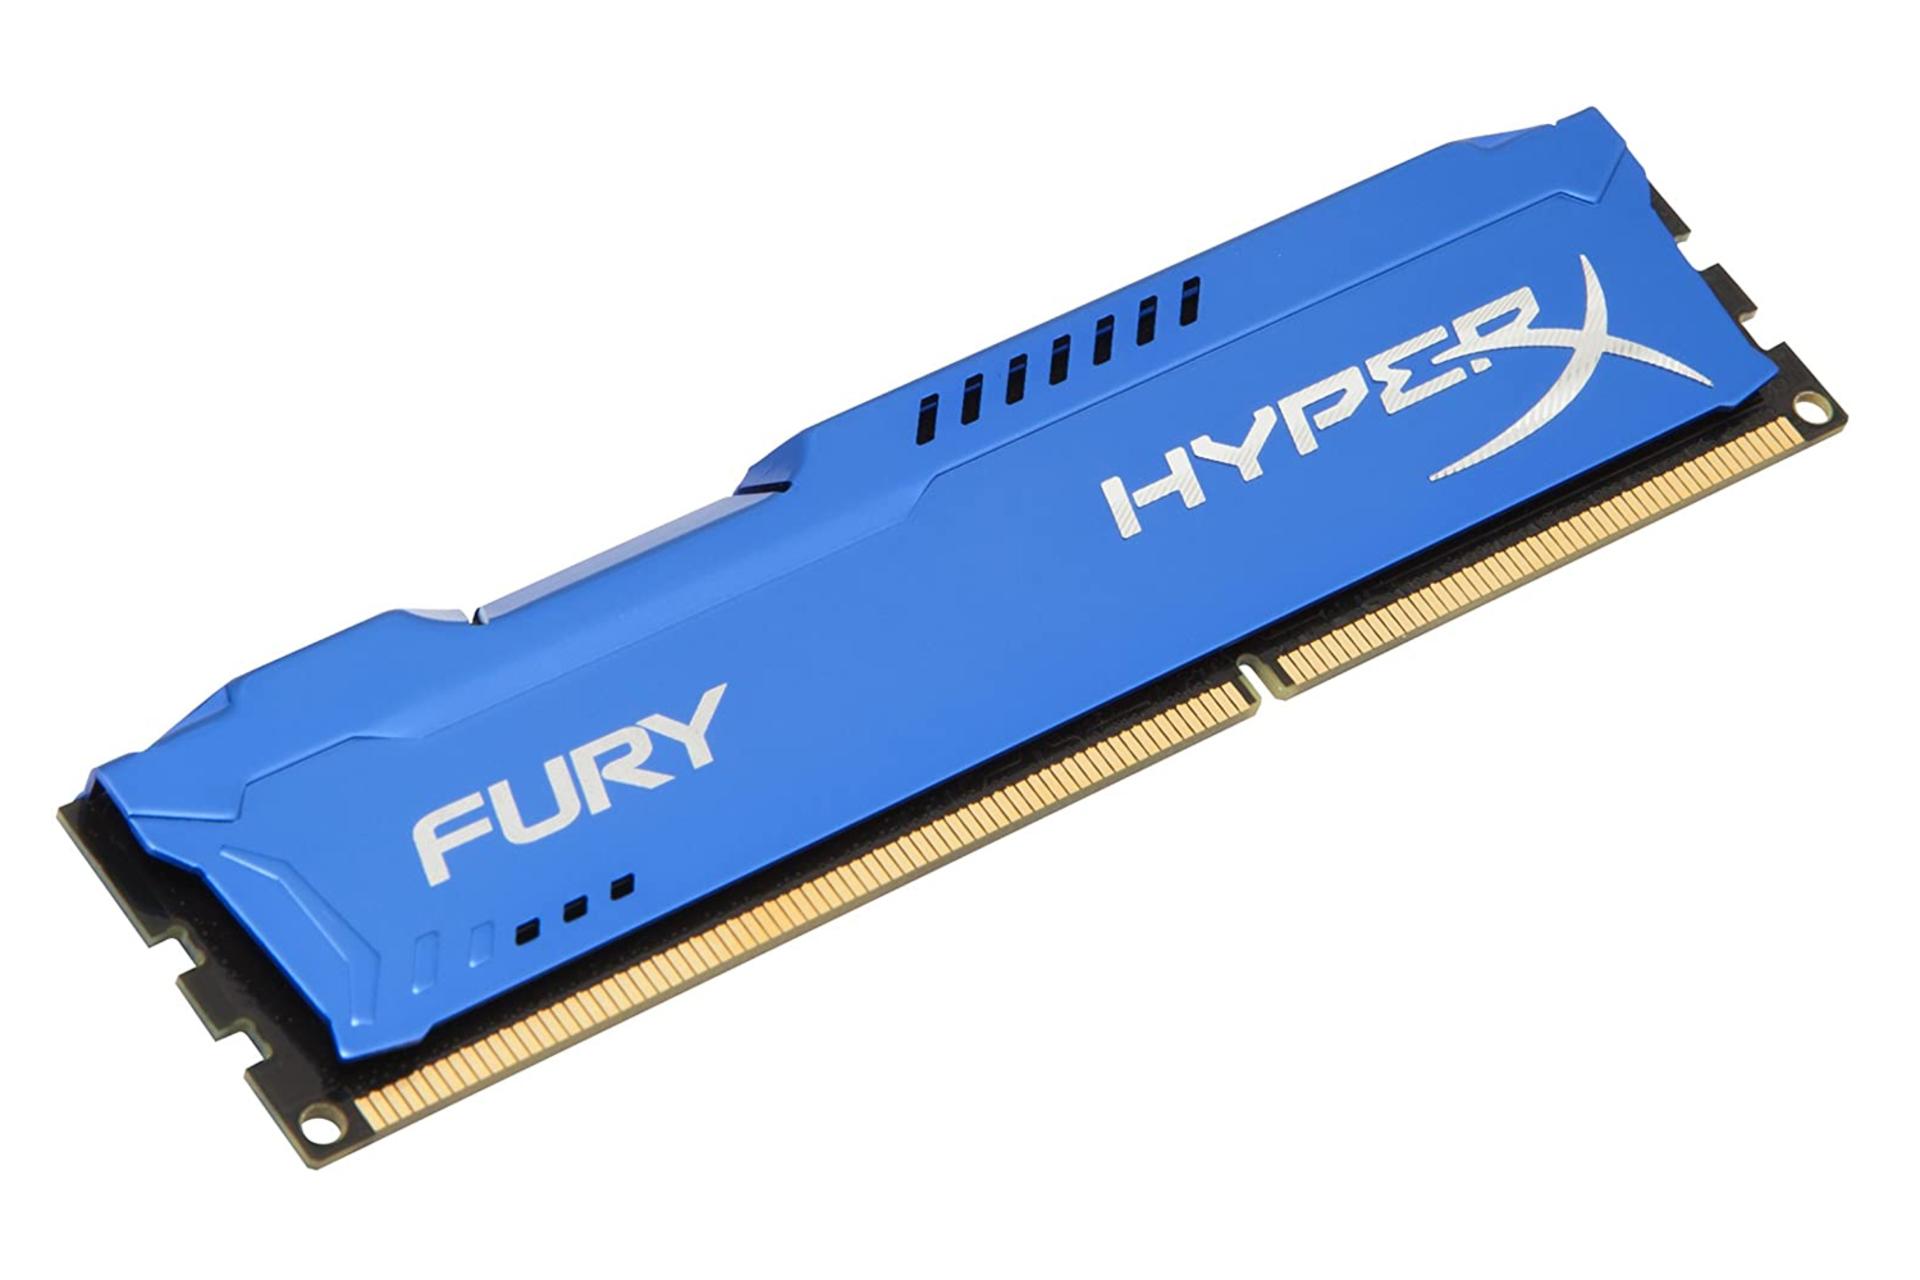 نمای کنار حافظه رم هایپر ایکس Fury ظرفیت 4 گیگابایت از نوع DDR3-1600